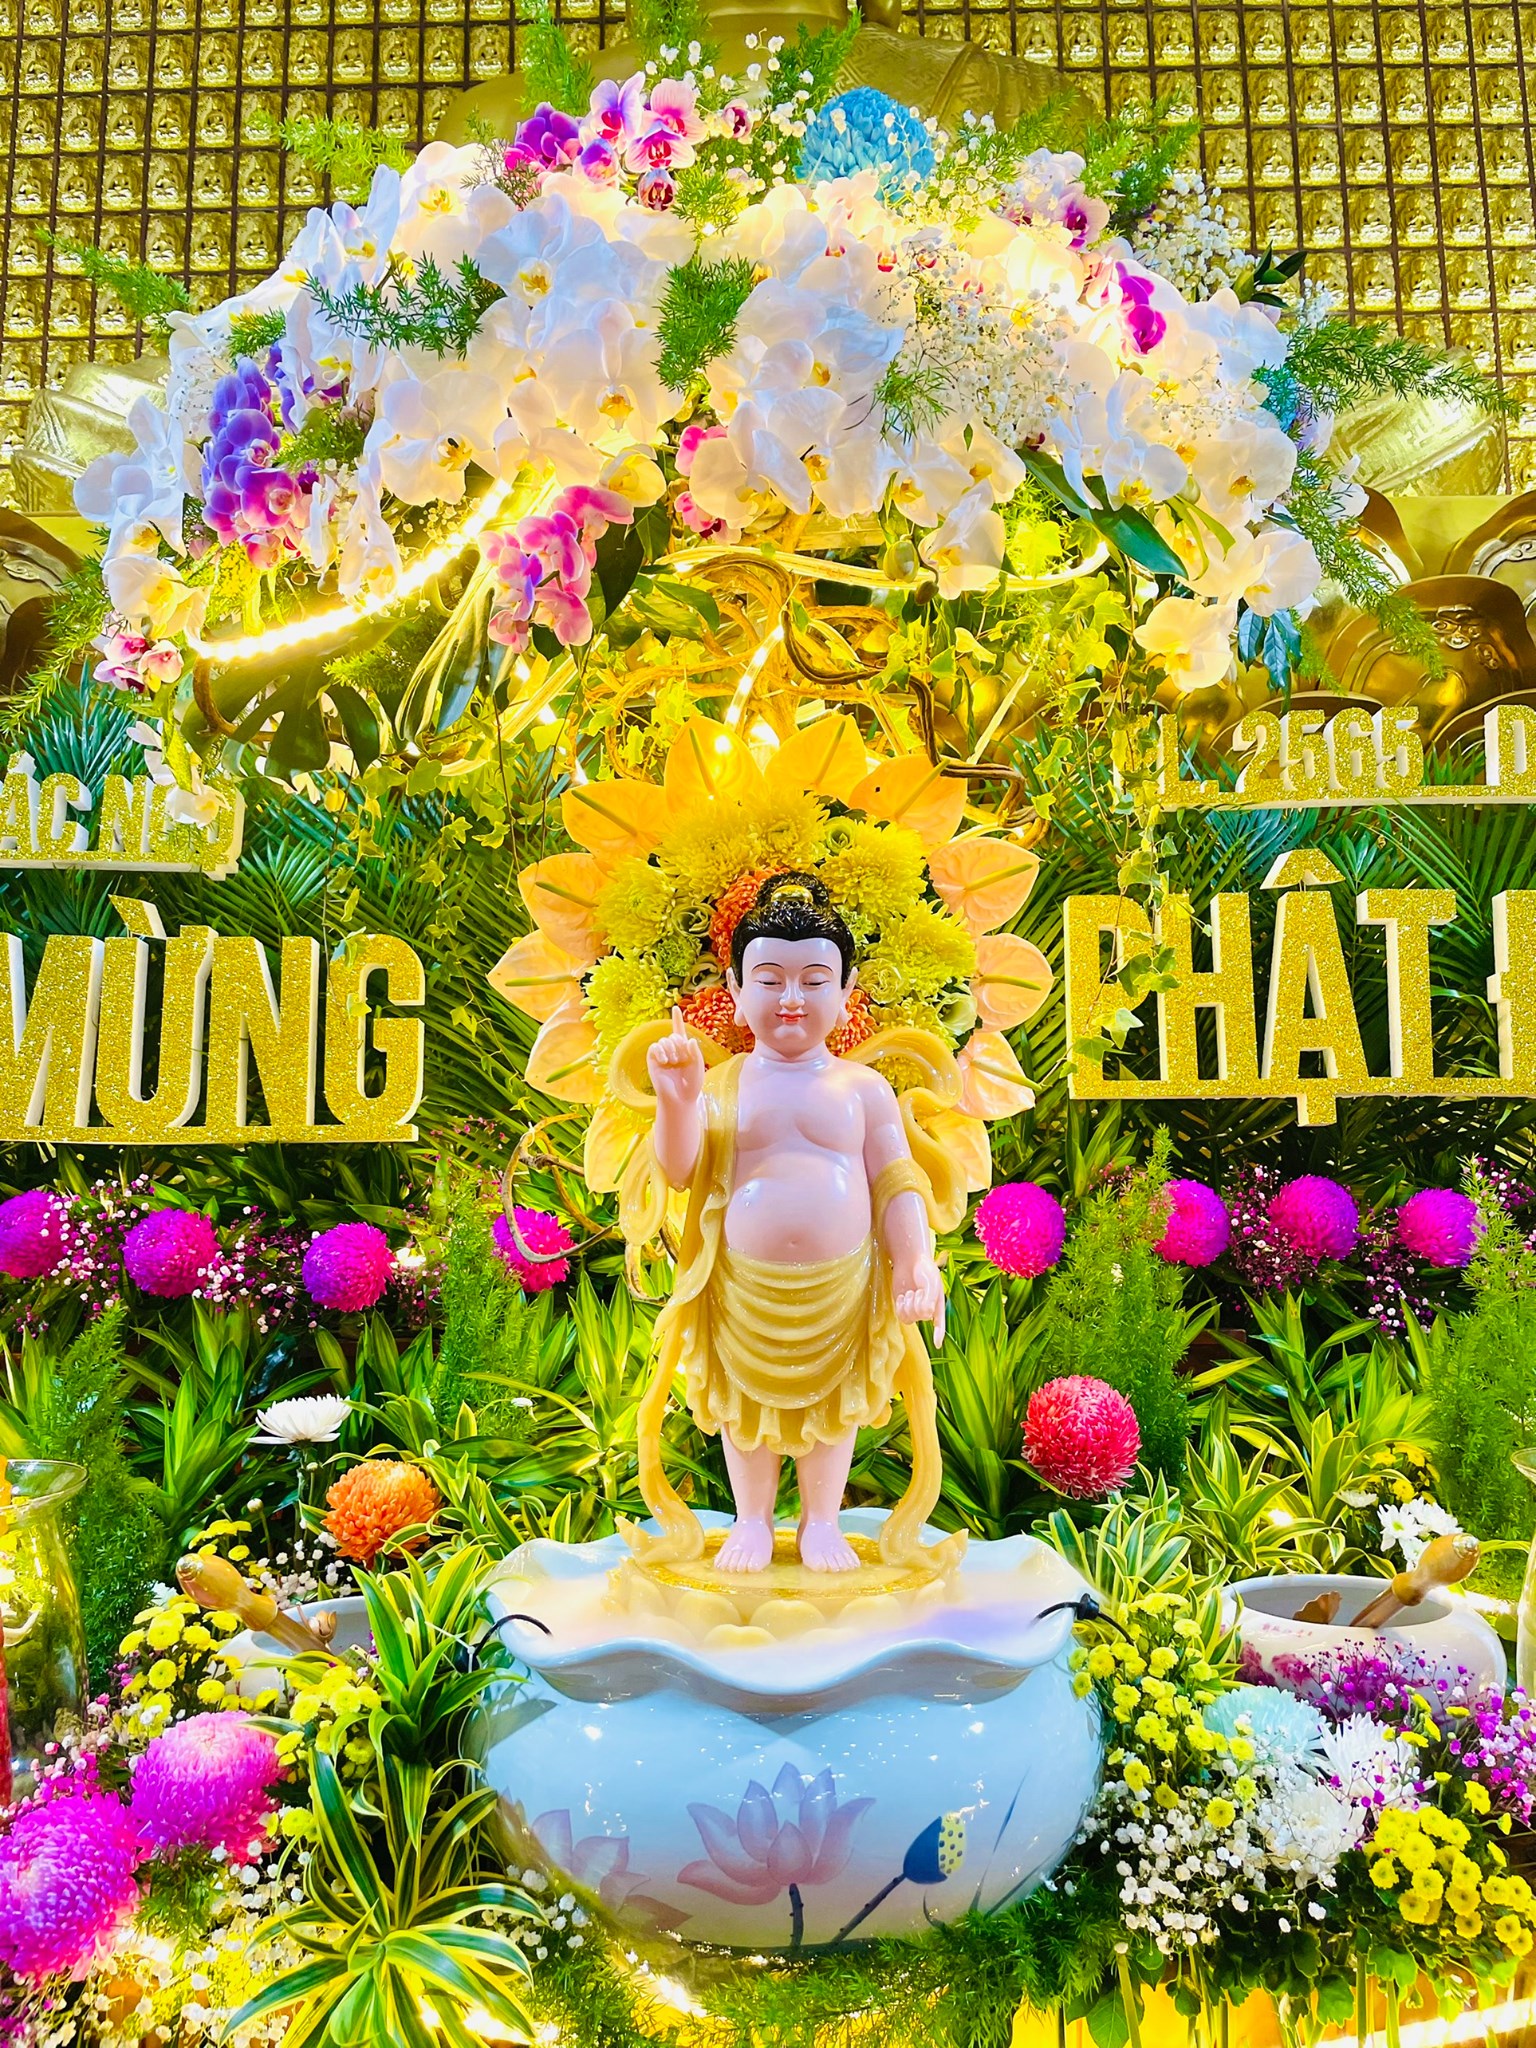 Rằm tháng 4 là ngày Phật Đản, ngày mà Ngài sinh ra và chính thức bước vào đời. Hãy cùng nhau đón mừng ngày này bằng những bức ảnh tuyệt đẹp về Lễ Phật Đản rằm tháng 4 để cảm nhận sự thiêng liêng của ngày đặc biệt này.